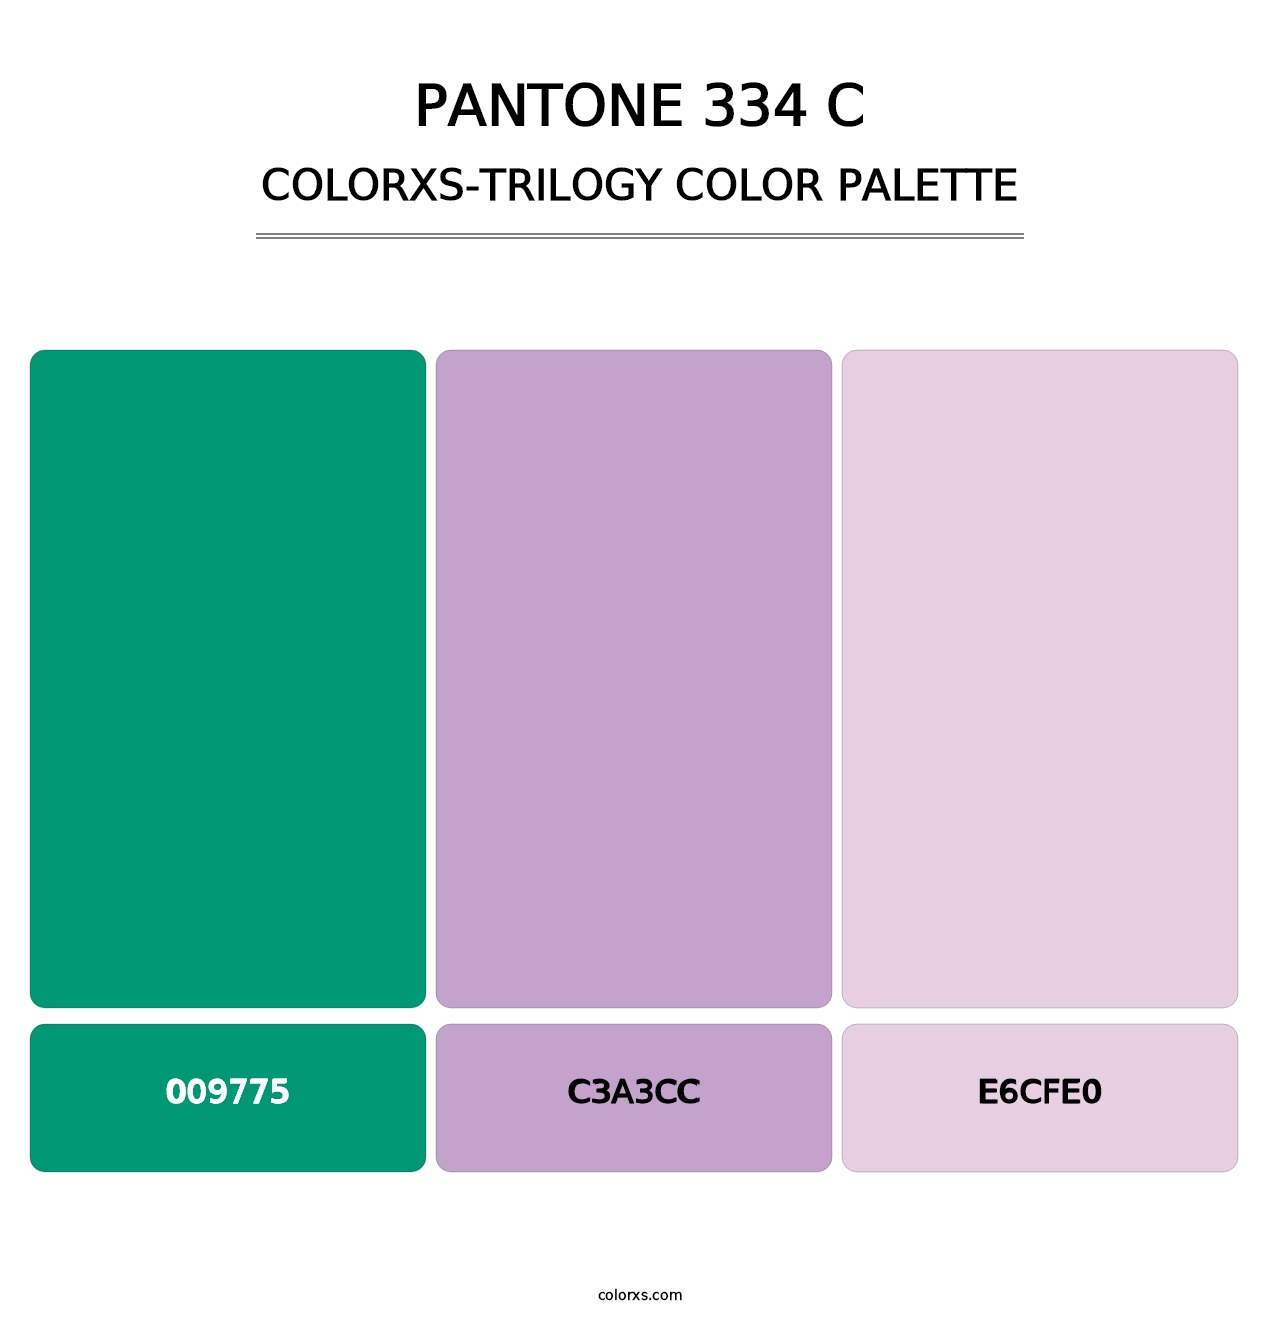 PANTONE 334 C - Colorxs Trilogy Palette